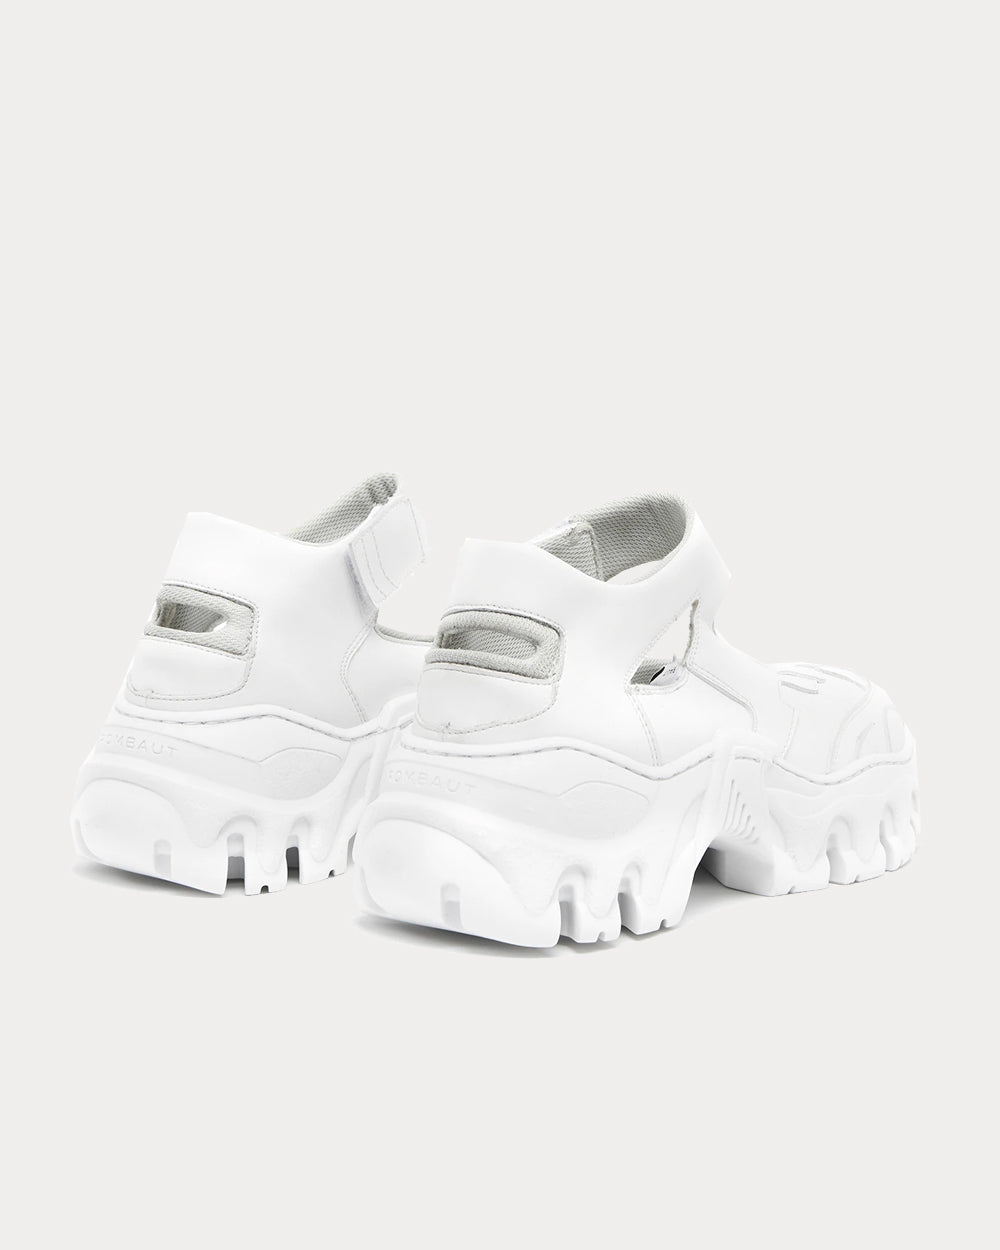 Rombaut - Boccaccio II Ibiza Future White Low Top Sneakers